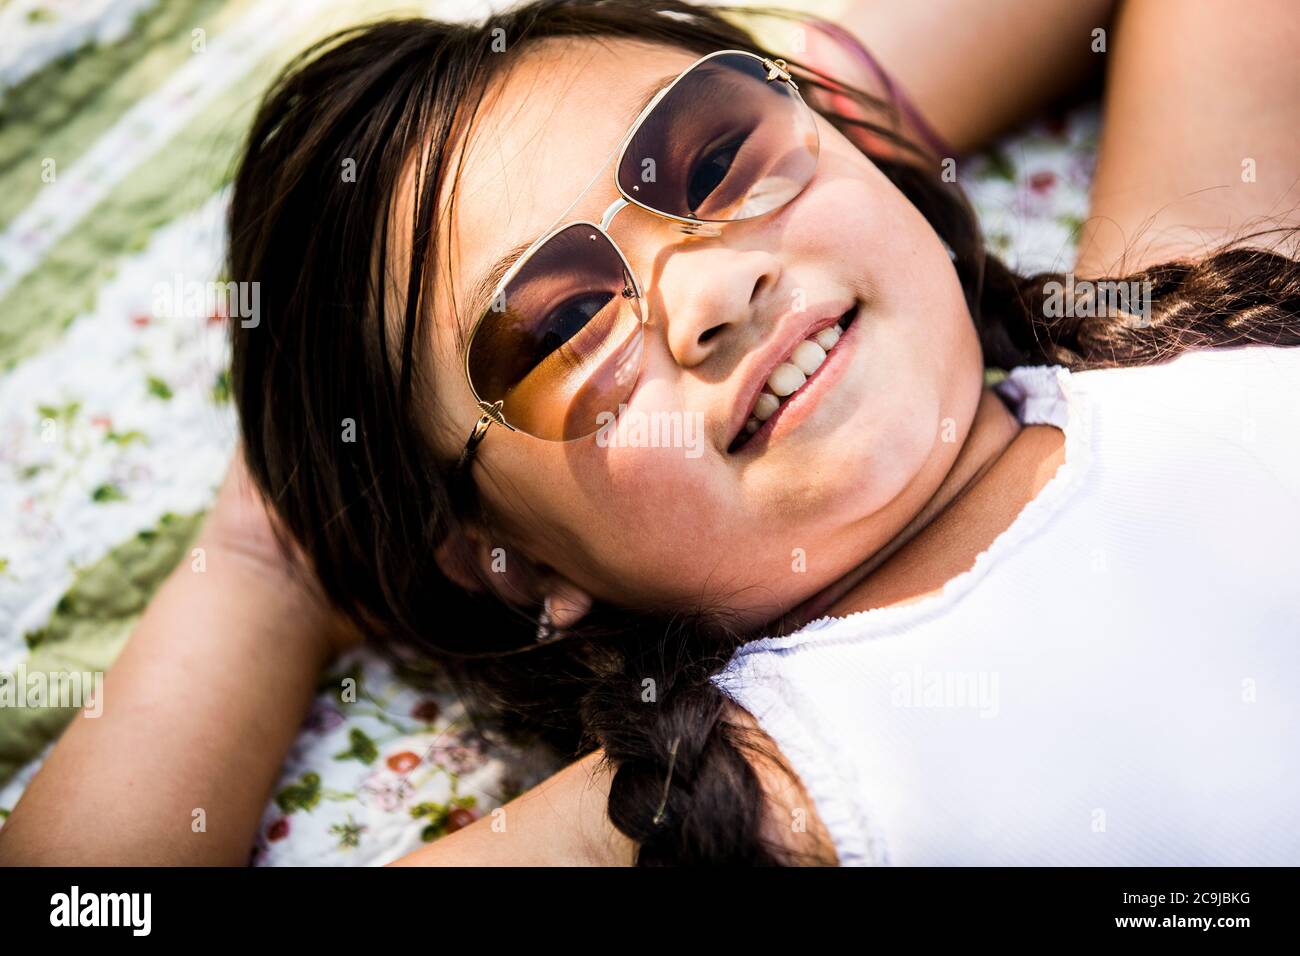 Chica acostada en una manta en el parque, sonriendo, retrato. Foto de stock